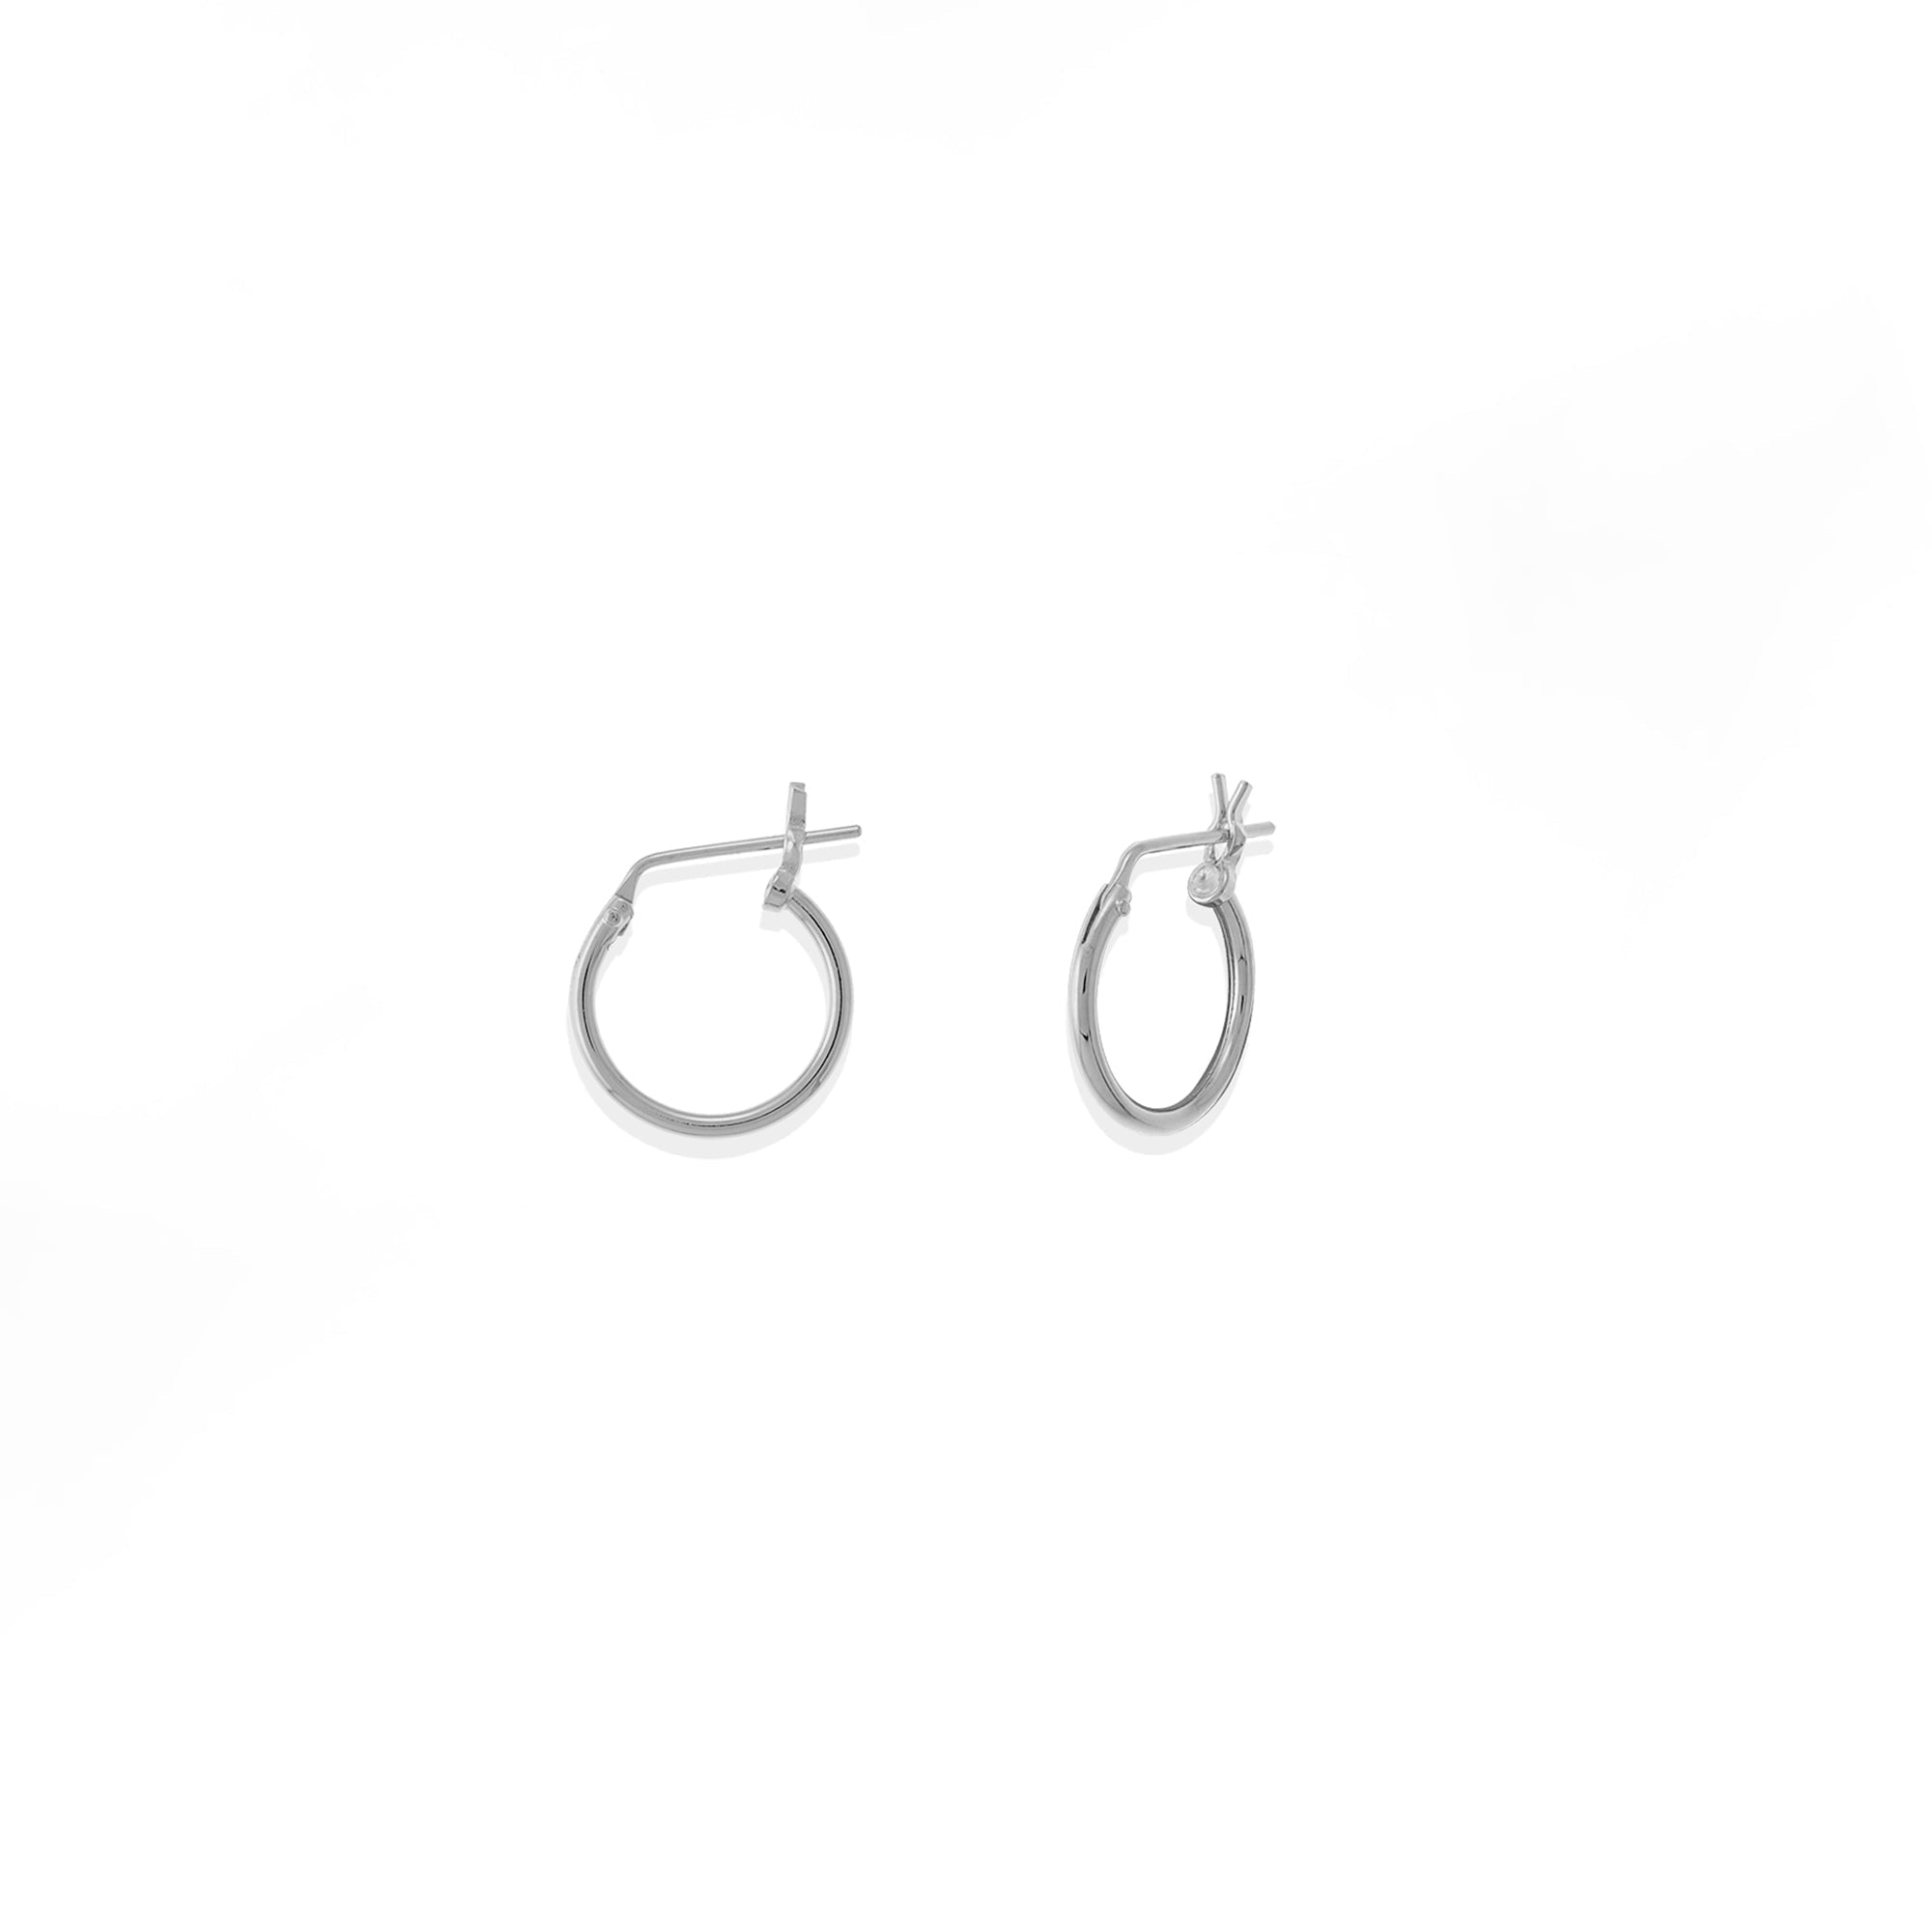 Boma Jewelry Earrings Sterling Silver / 0.5" Belle Hoops